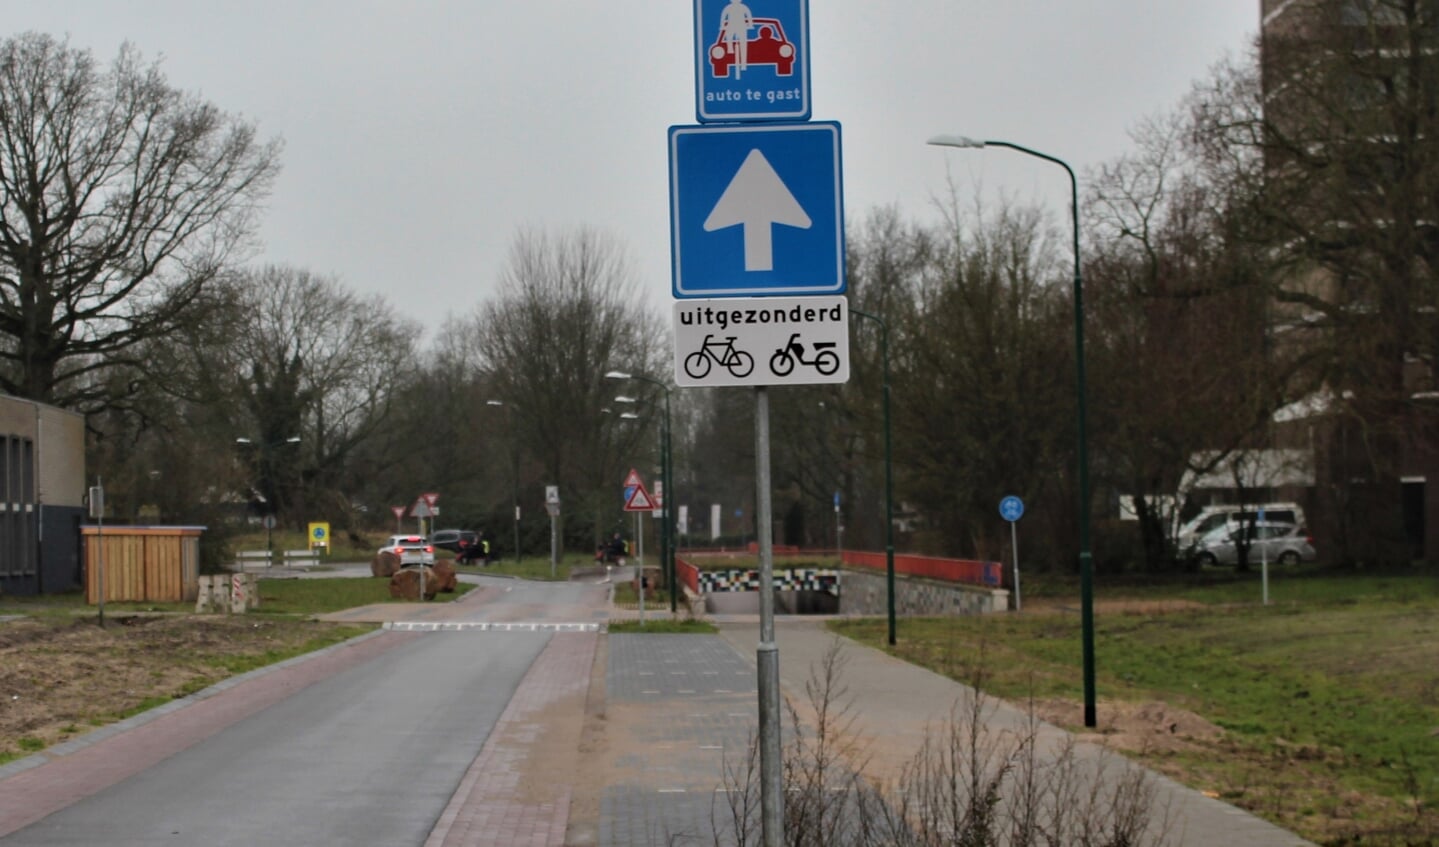 De gemeente beoogt met het invoeren van éénrichtingsverkeer dat ook bromfietsers vanaf de Biltse Rading niet de Asserweg oprijden. Echter mogen er wél brommers door de tunnel vanaf Weltevreden rijden richting Asserweg. 